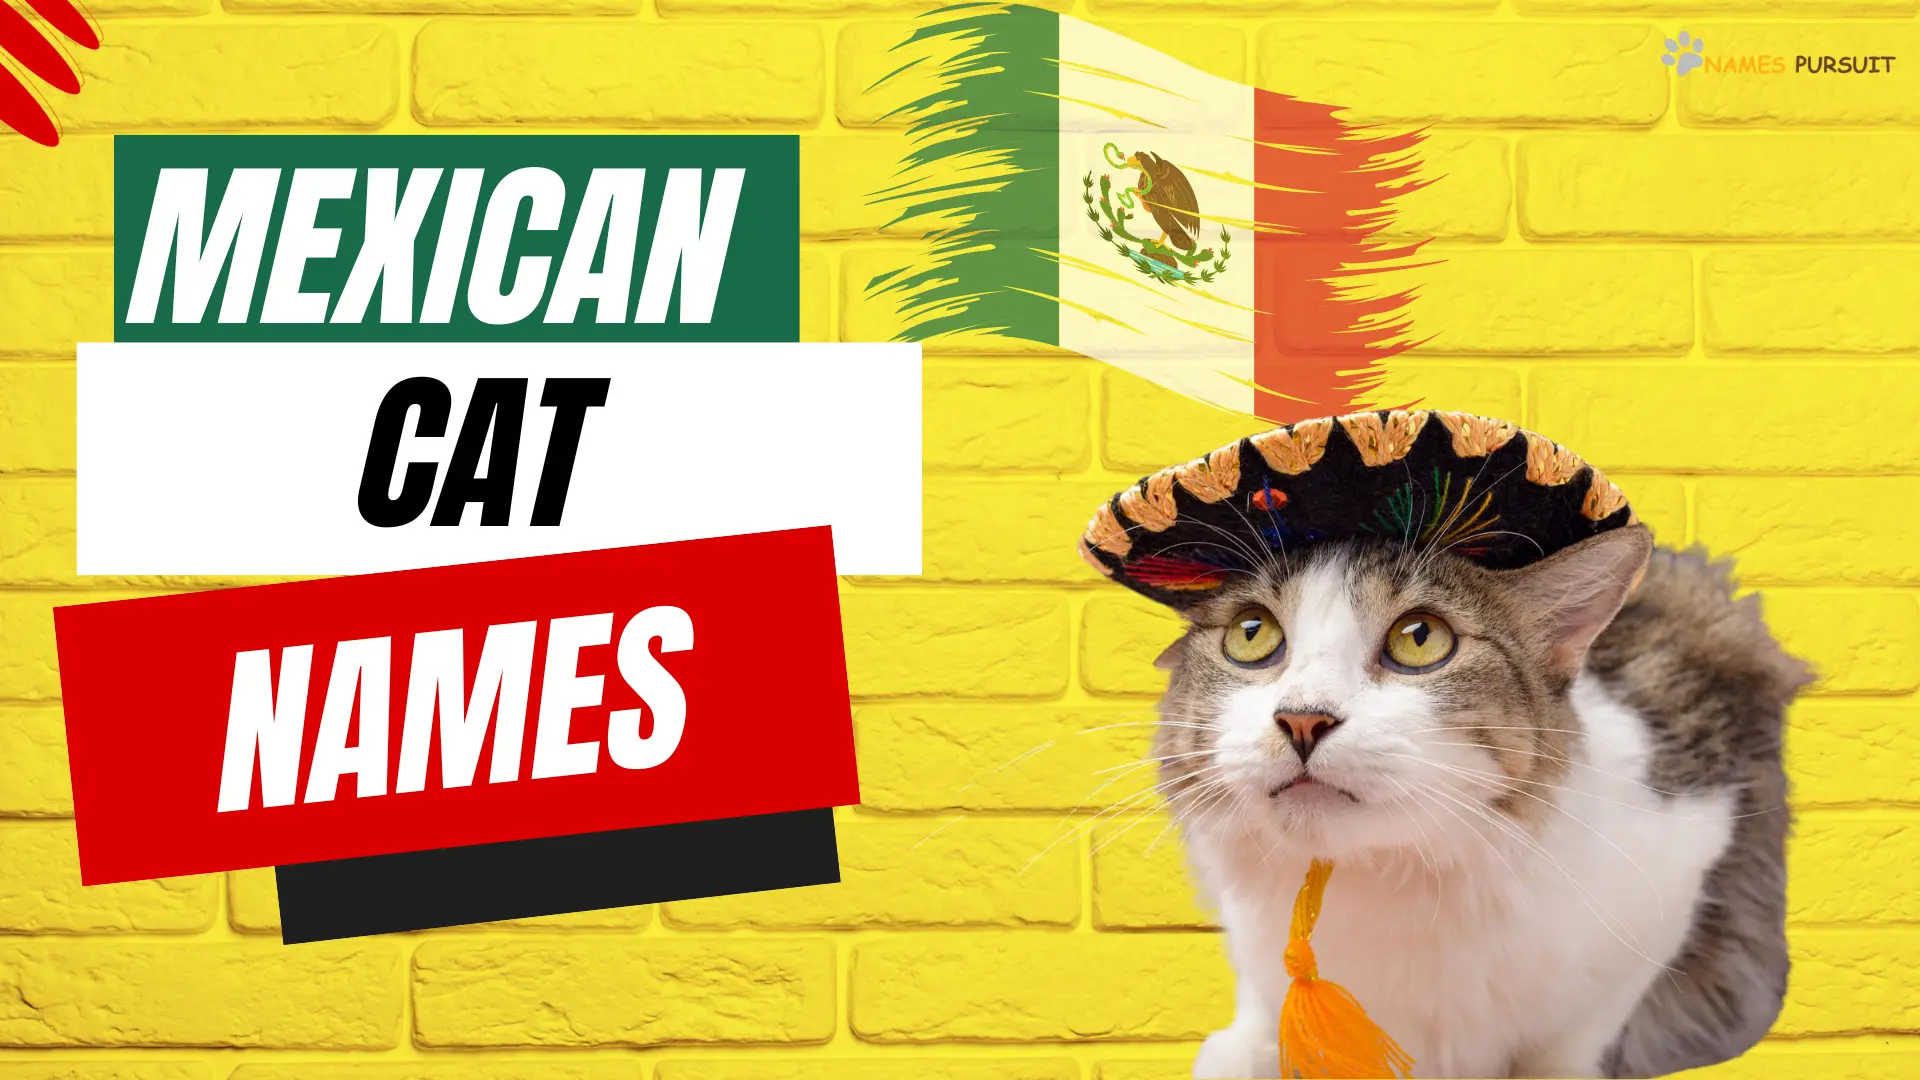 Mexican Cat Names